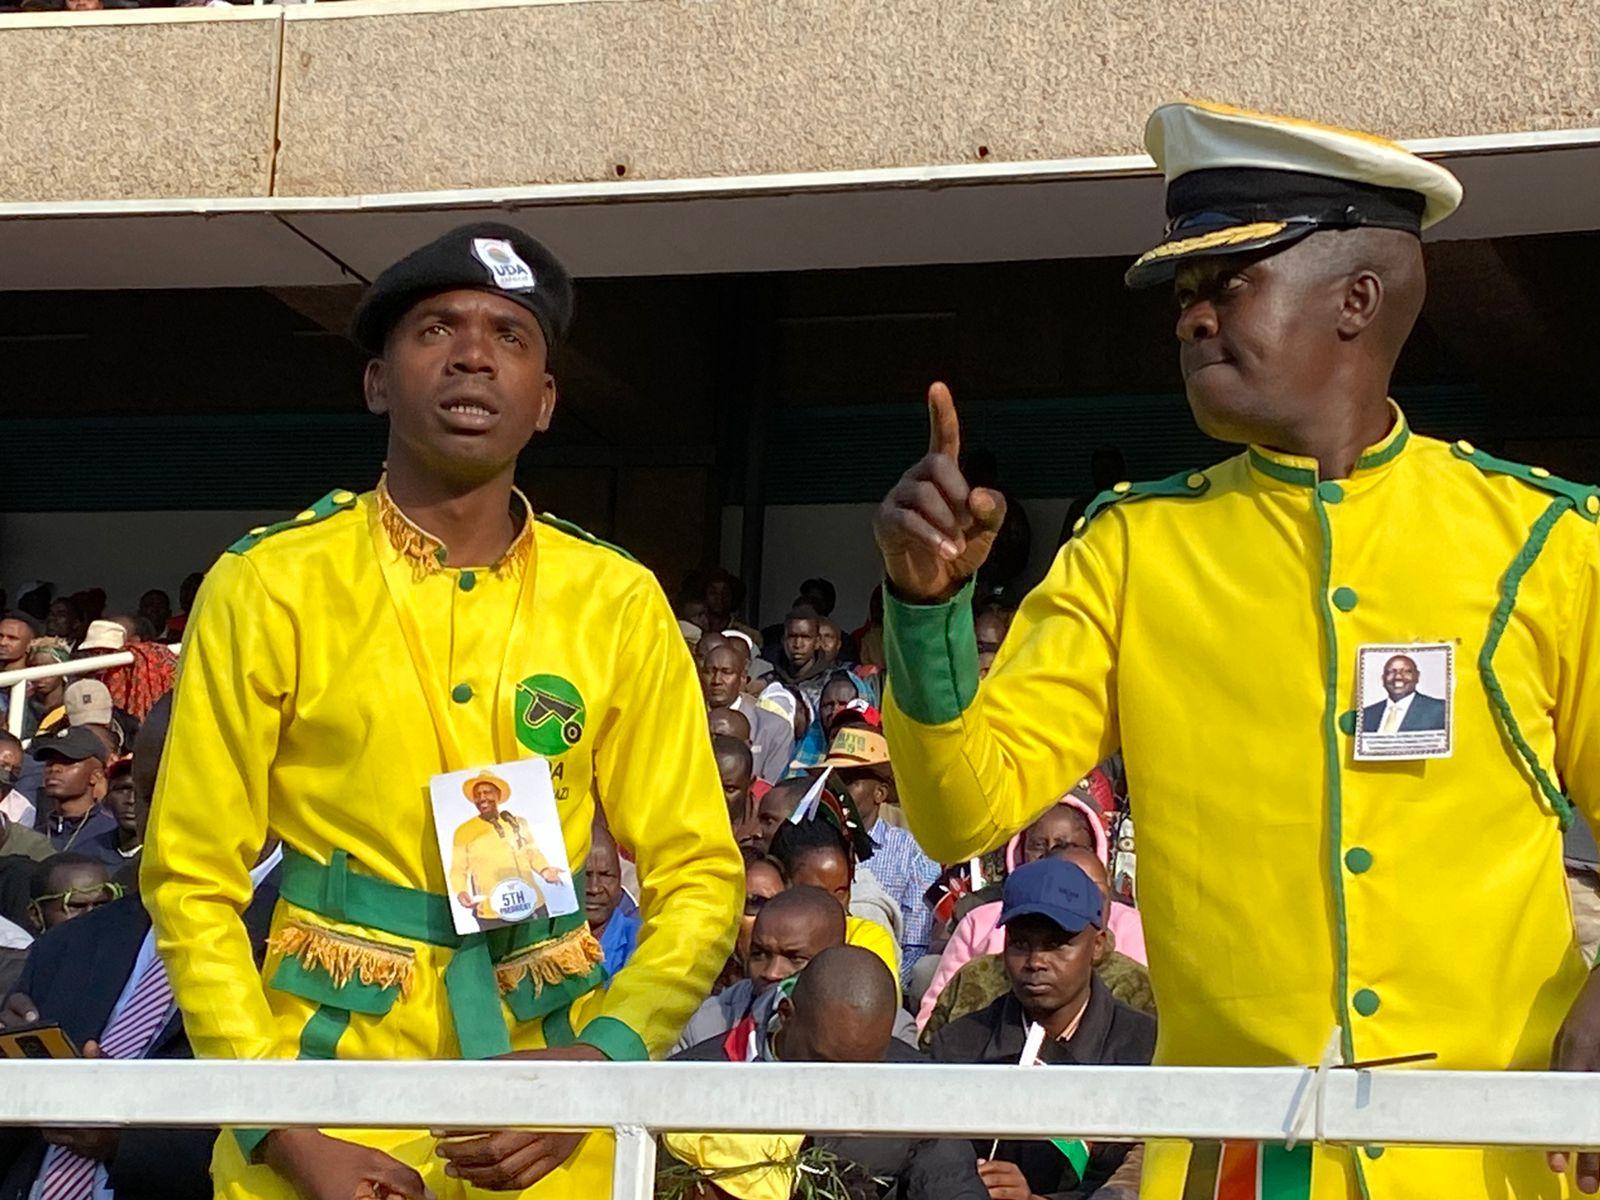 Pipo wear yellow, di colour wey pipo take sabi Ruto campaign.